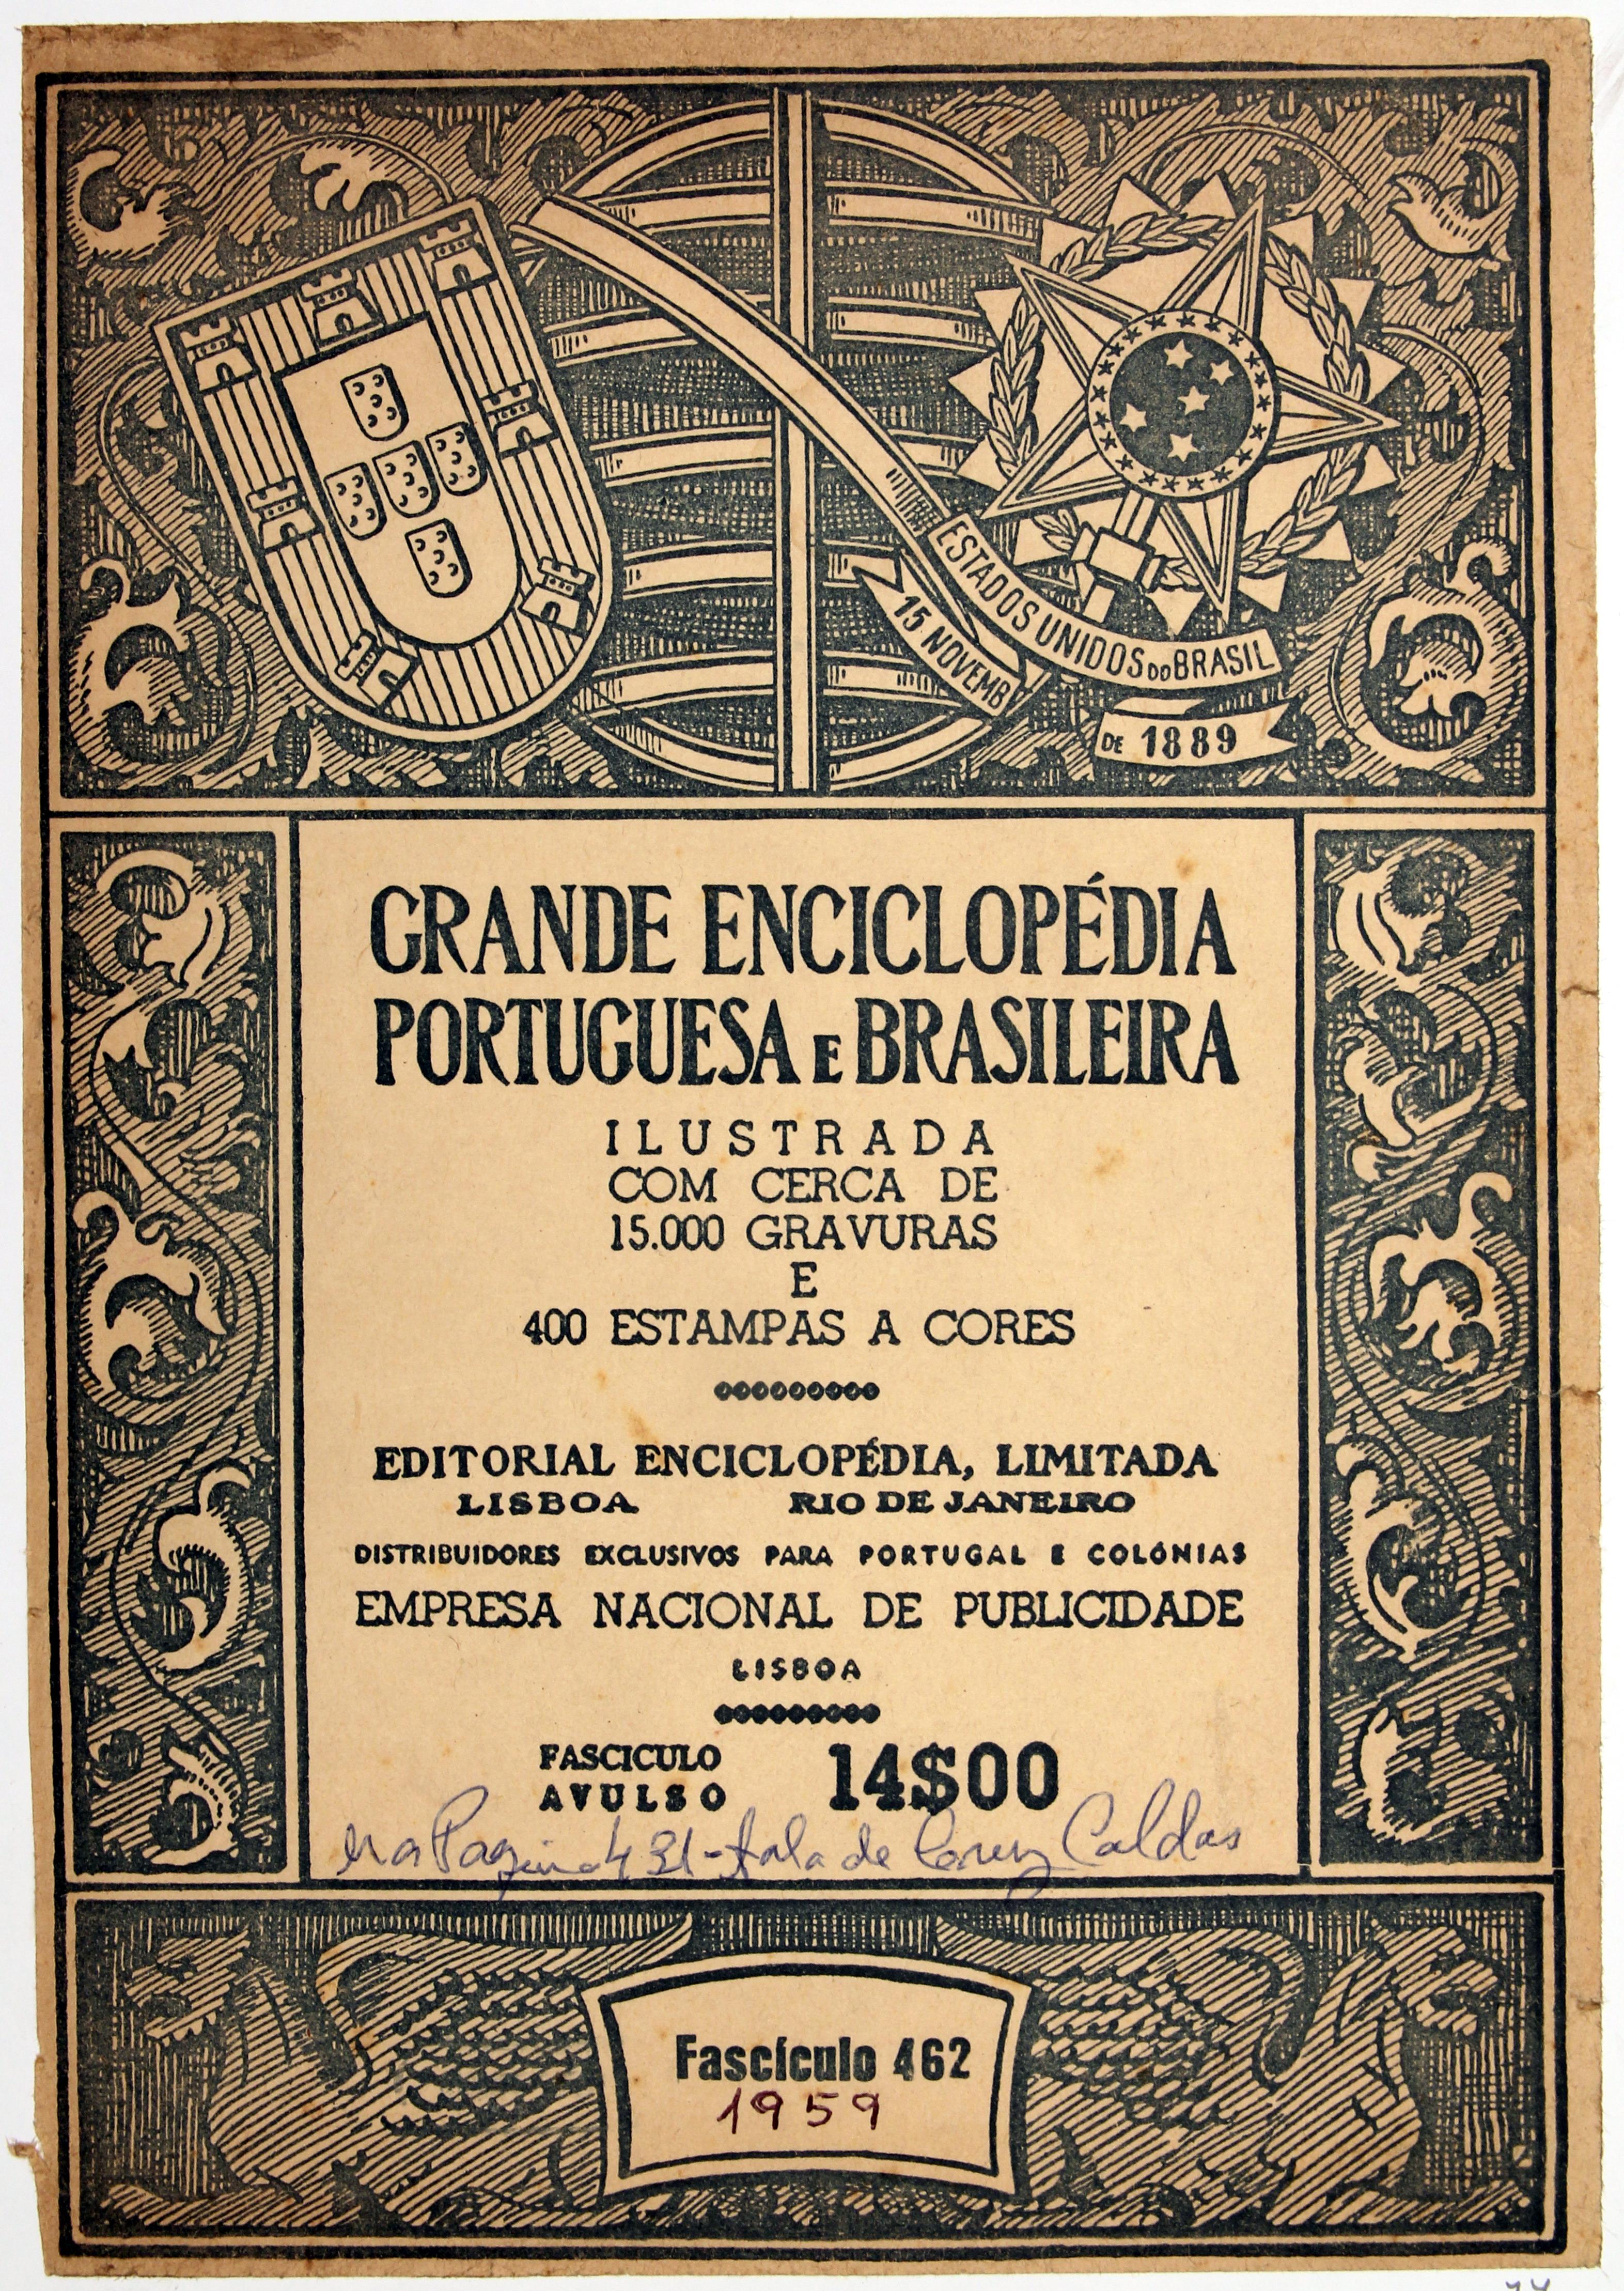 Cruz Caldas (3) : 1946-1965 : Grande Enciclopédia Portuguesa e brasileira : Cruz Caldas (António)